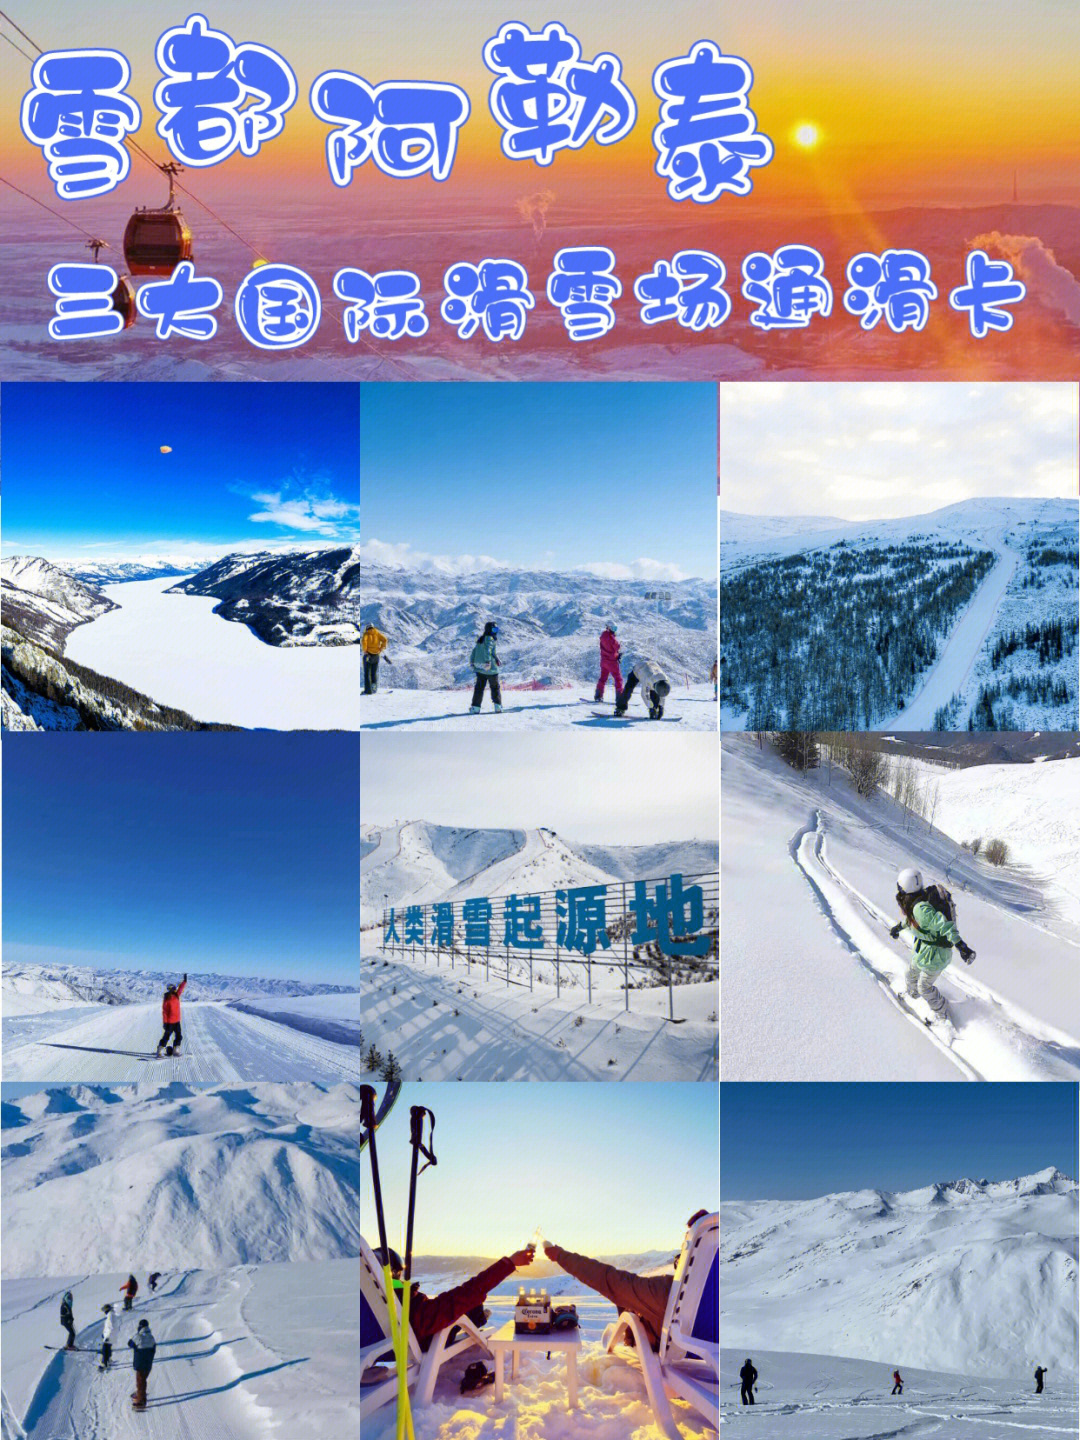 将军山滑雪场电话图片